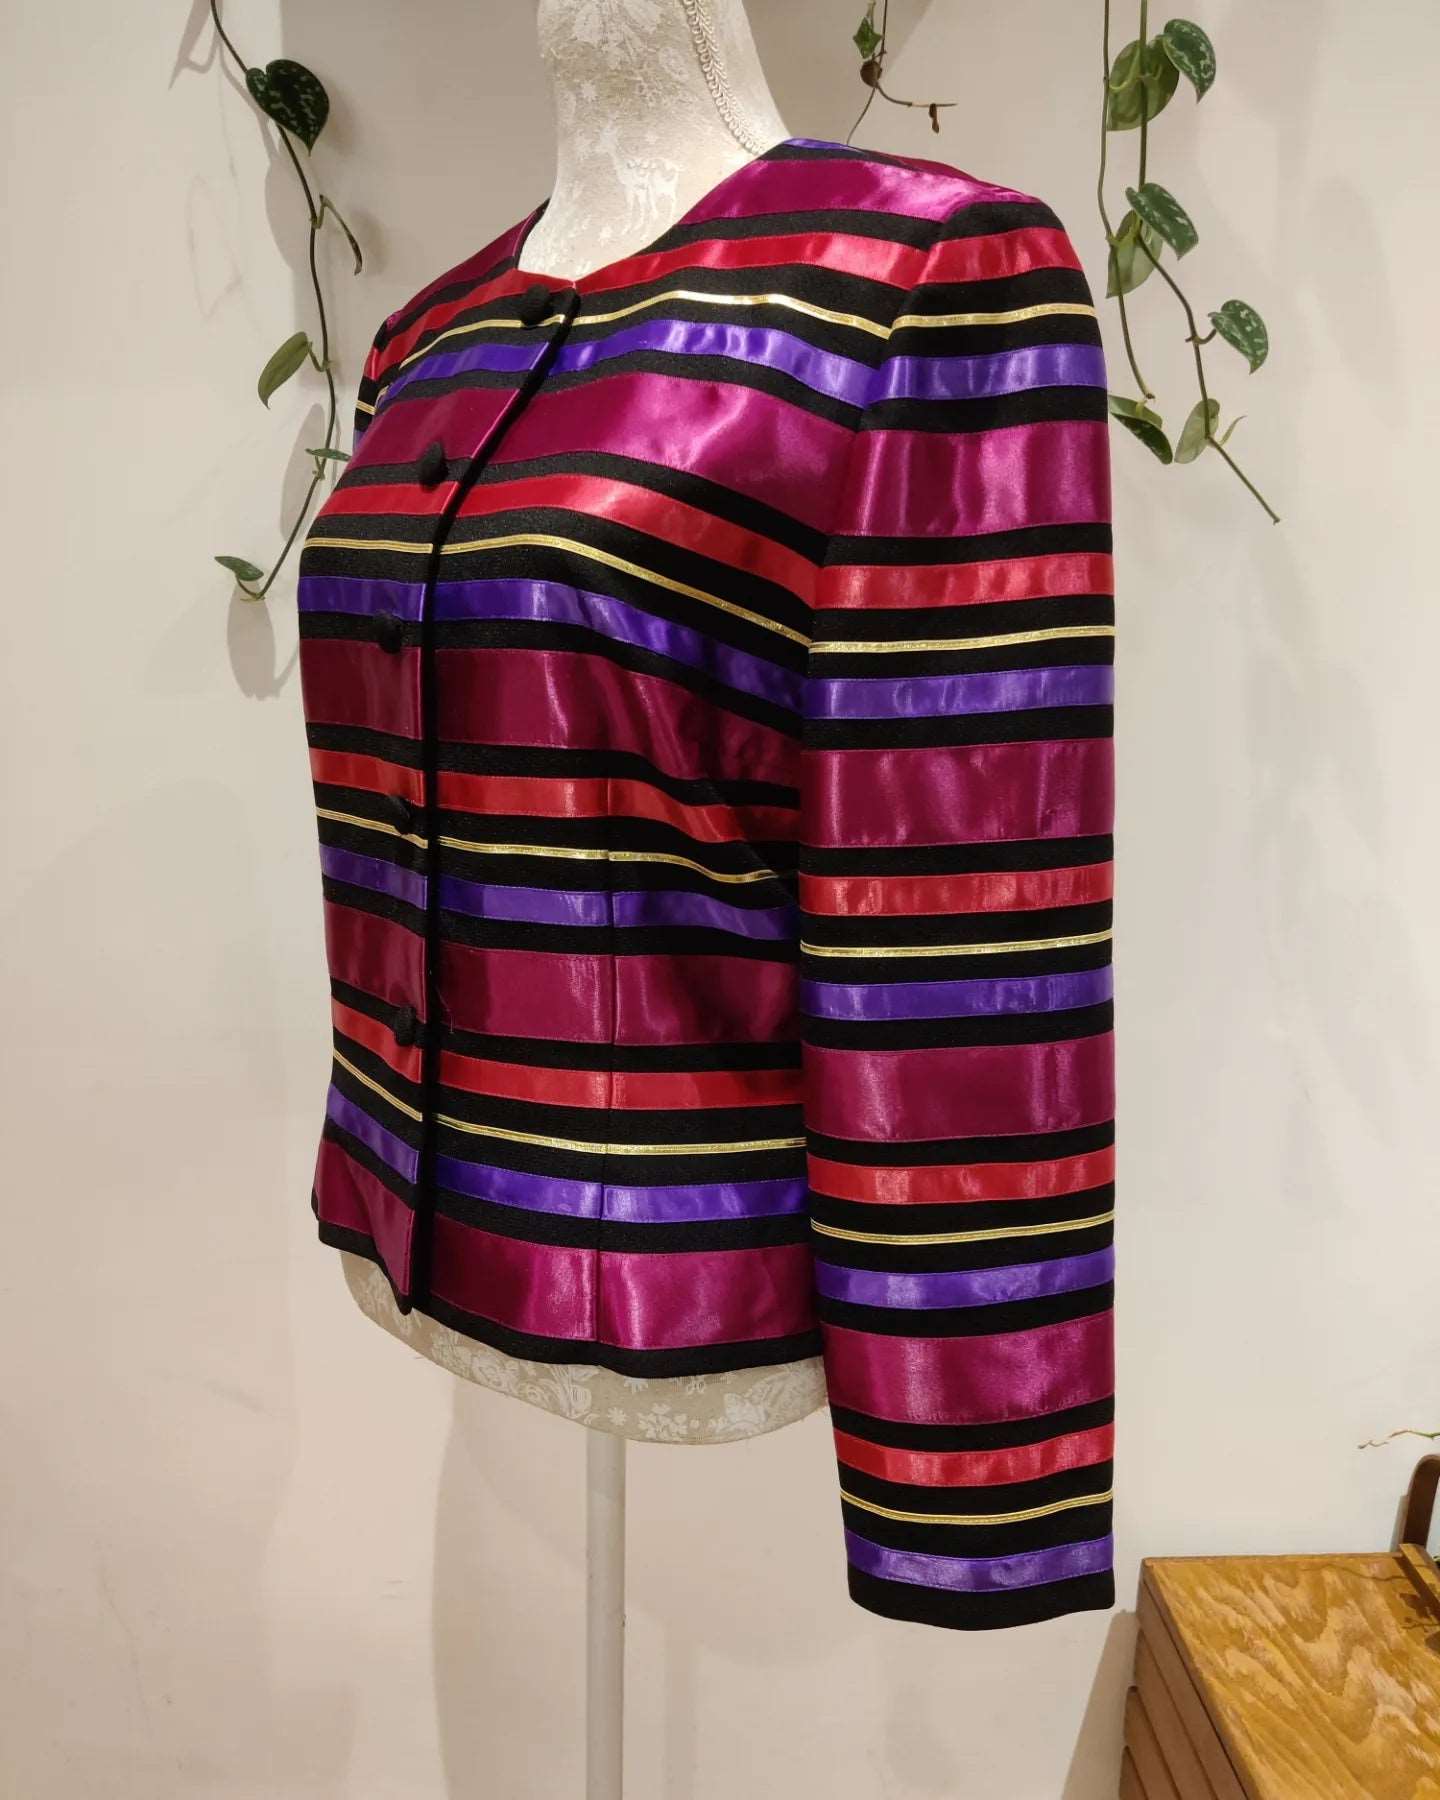 Rainbow 1980s striped jacket. Size 10-12